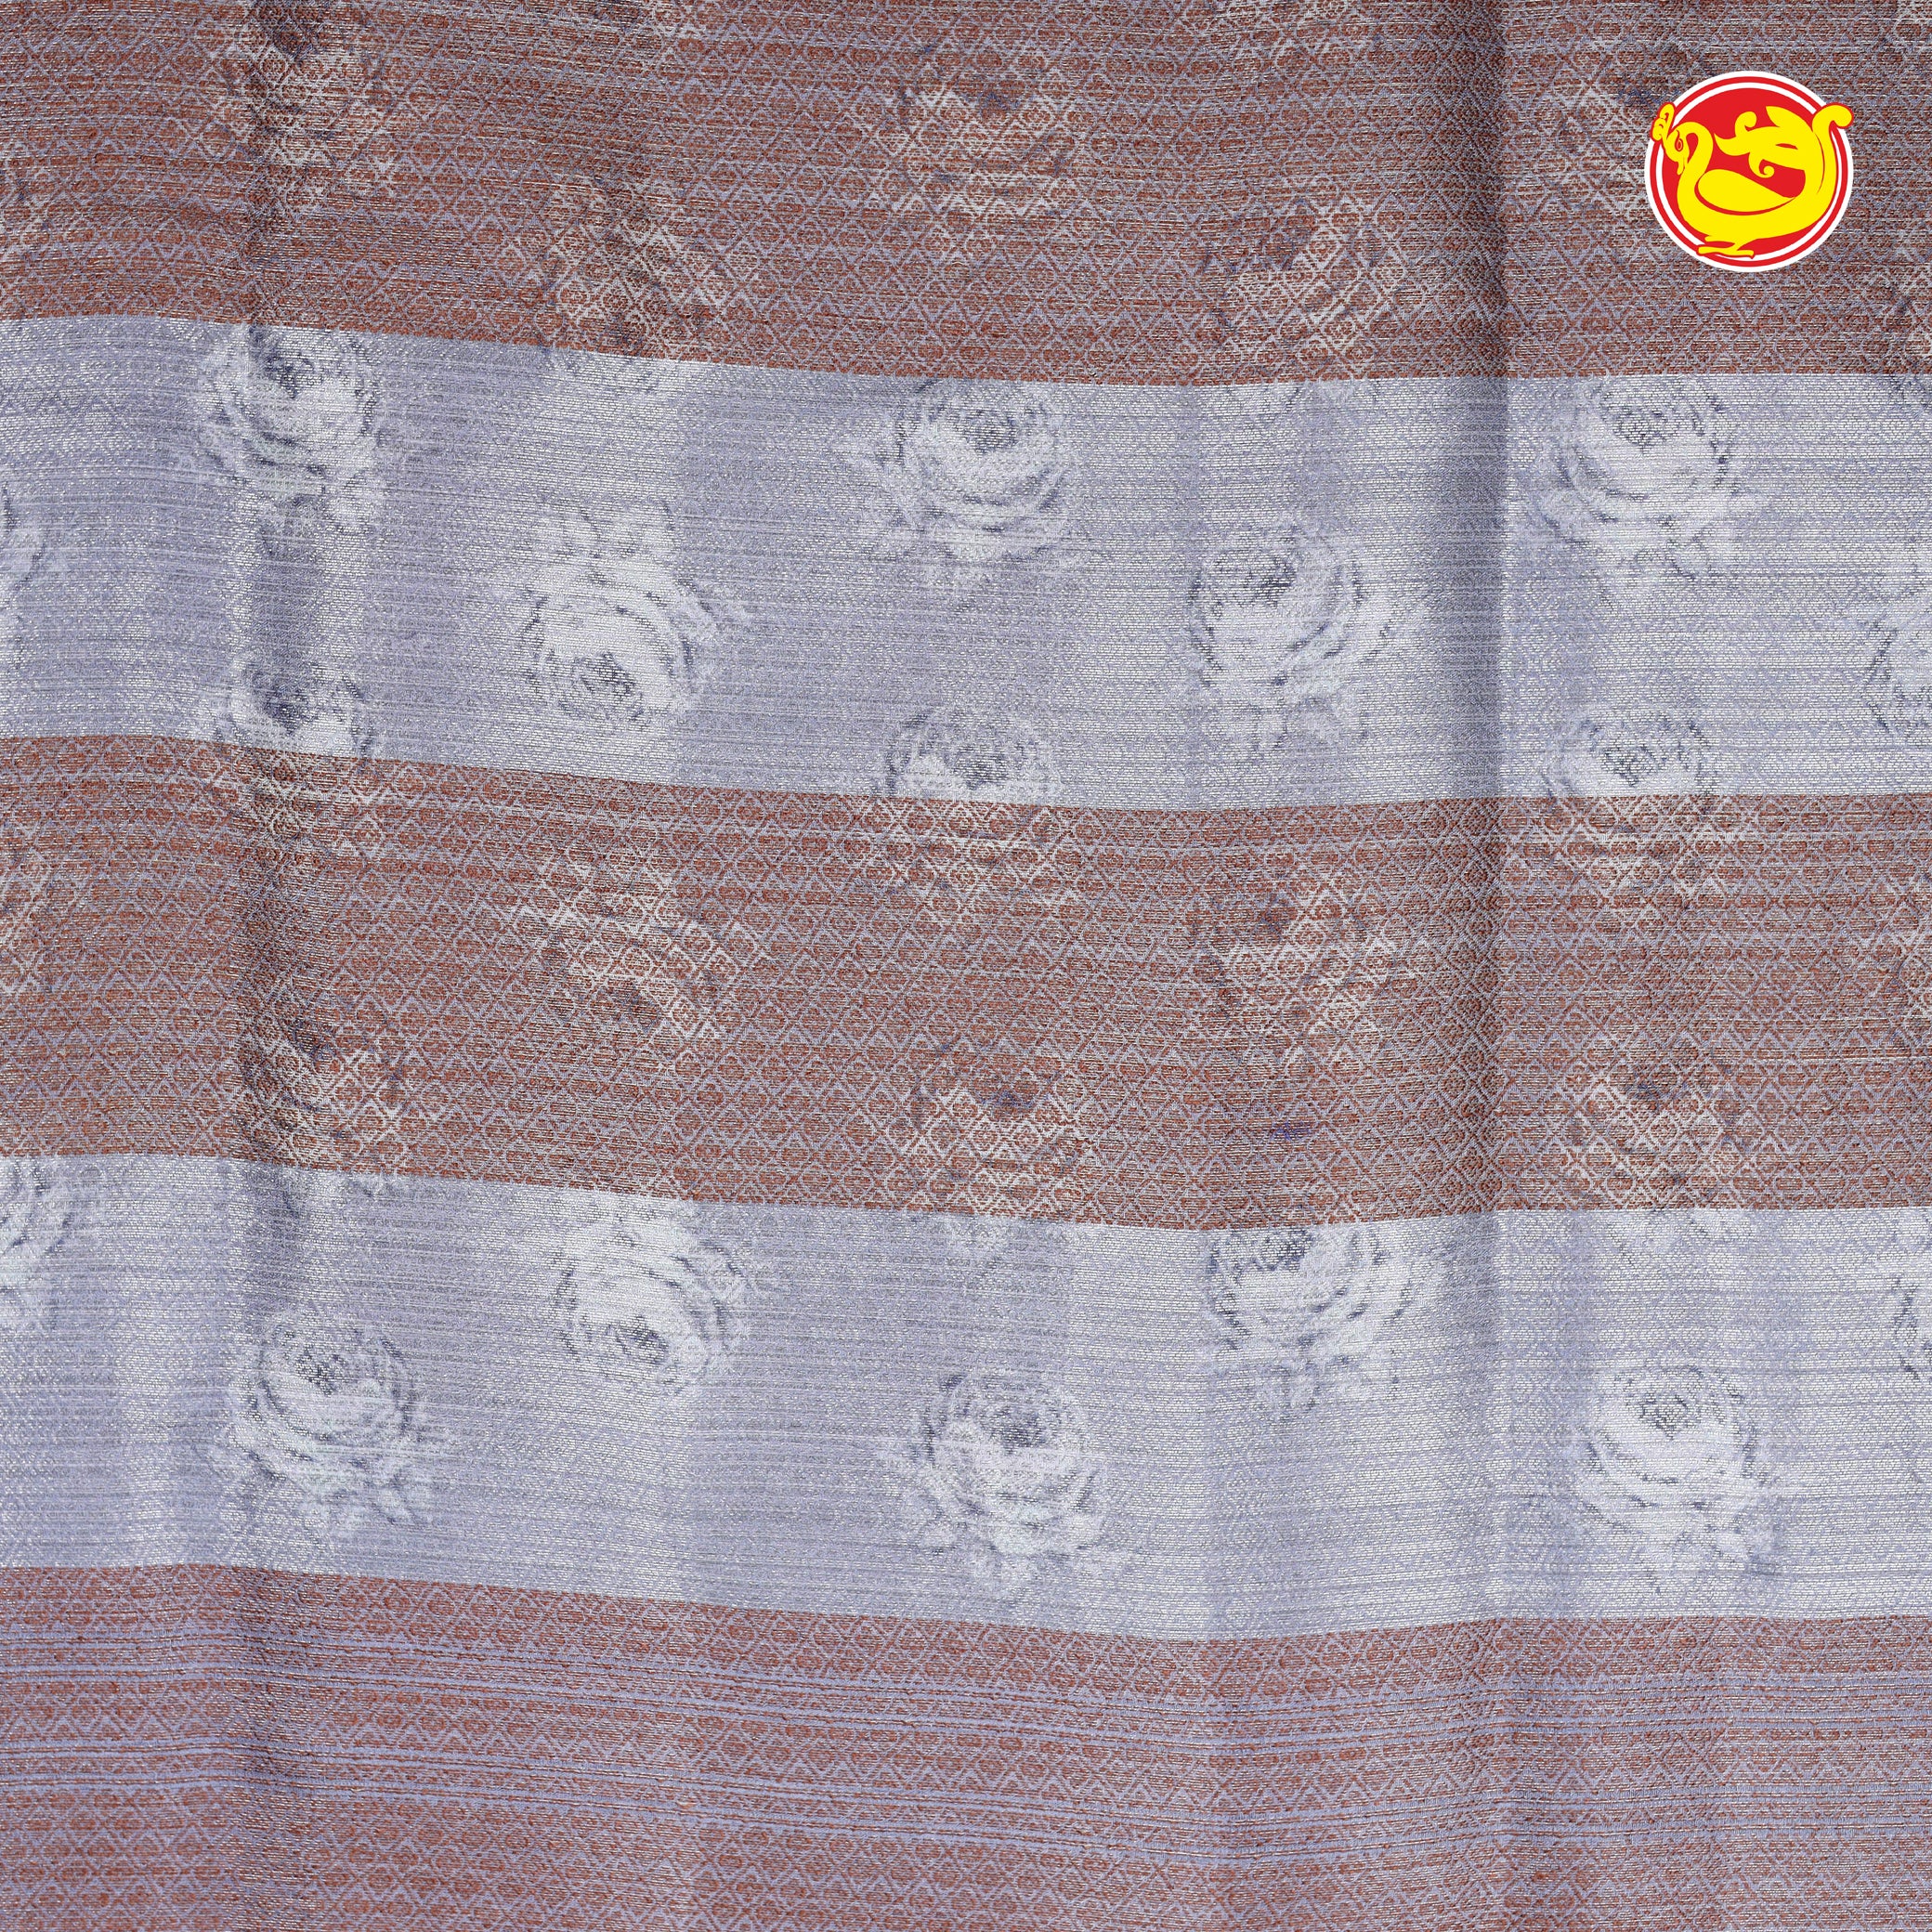 Grey floral digital printed tussar silk saree